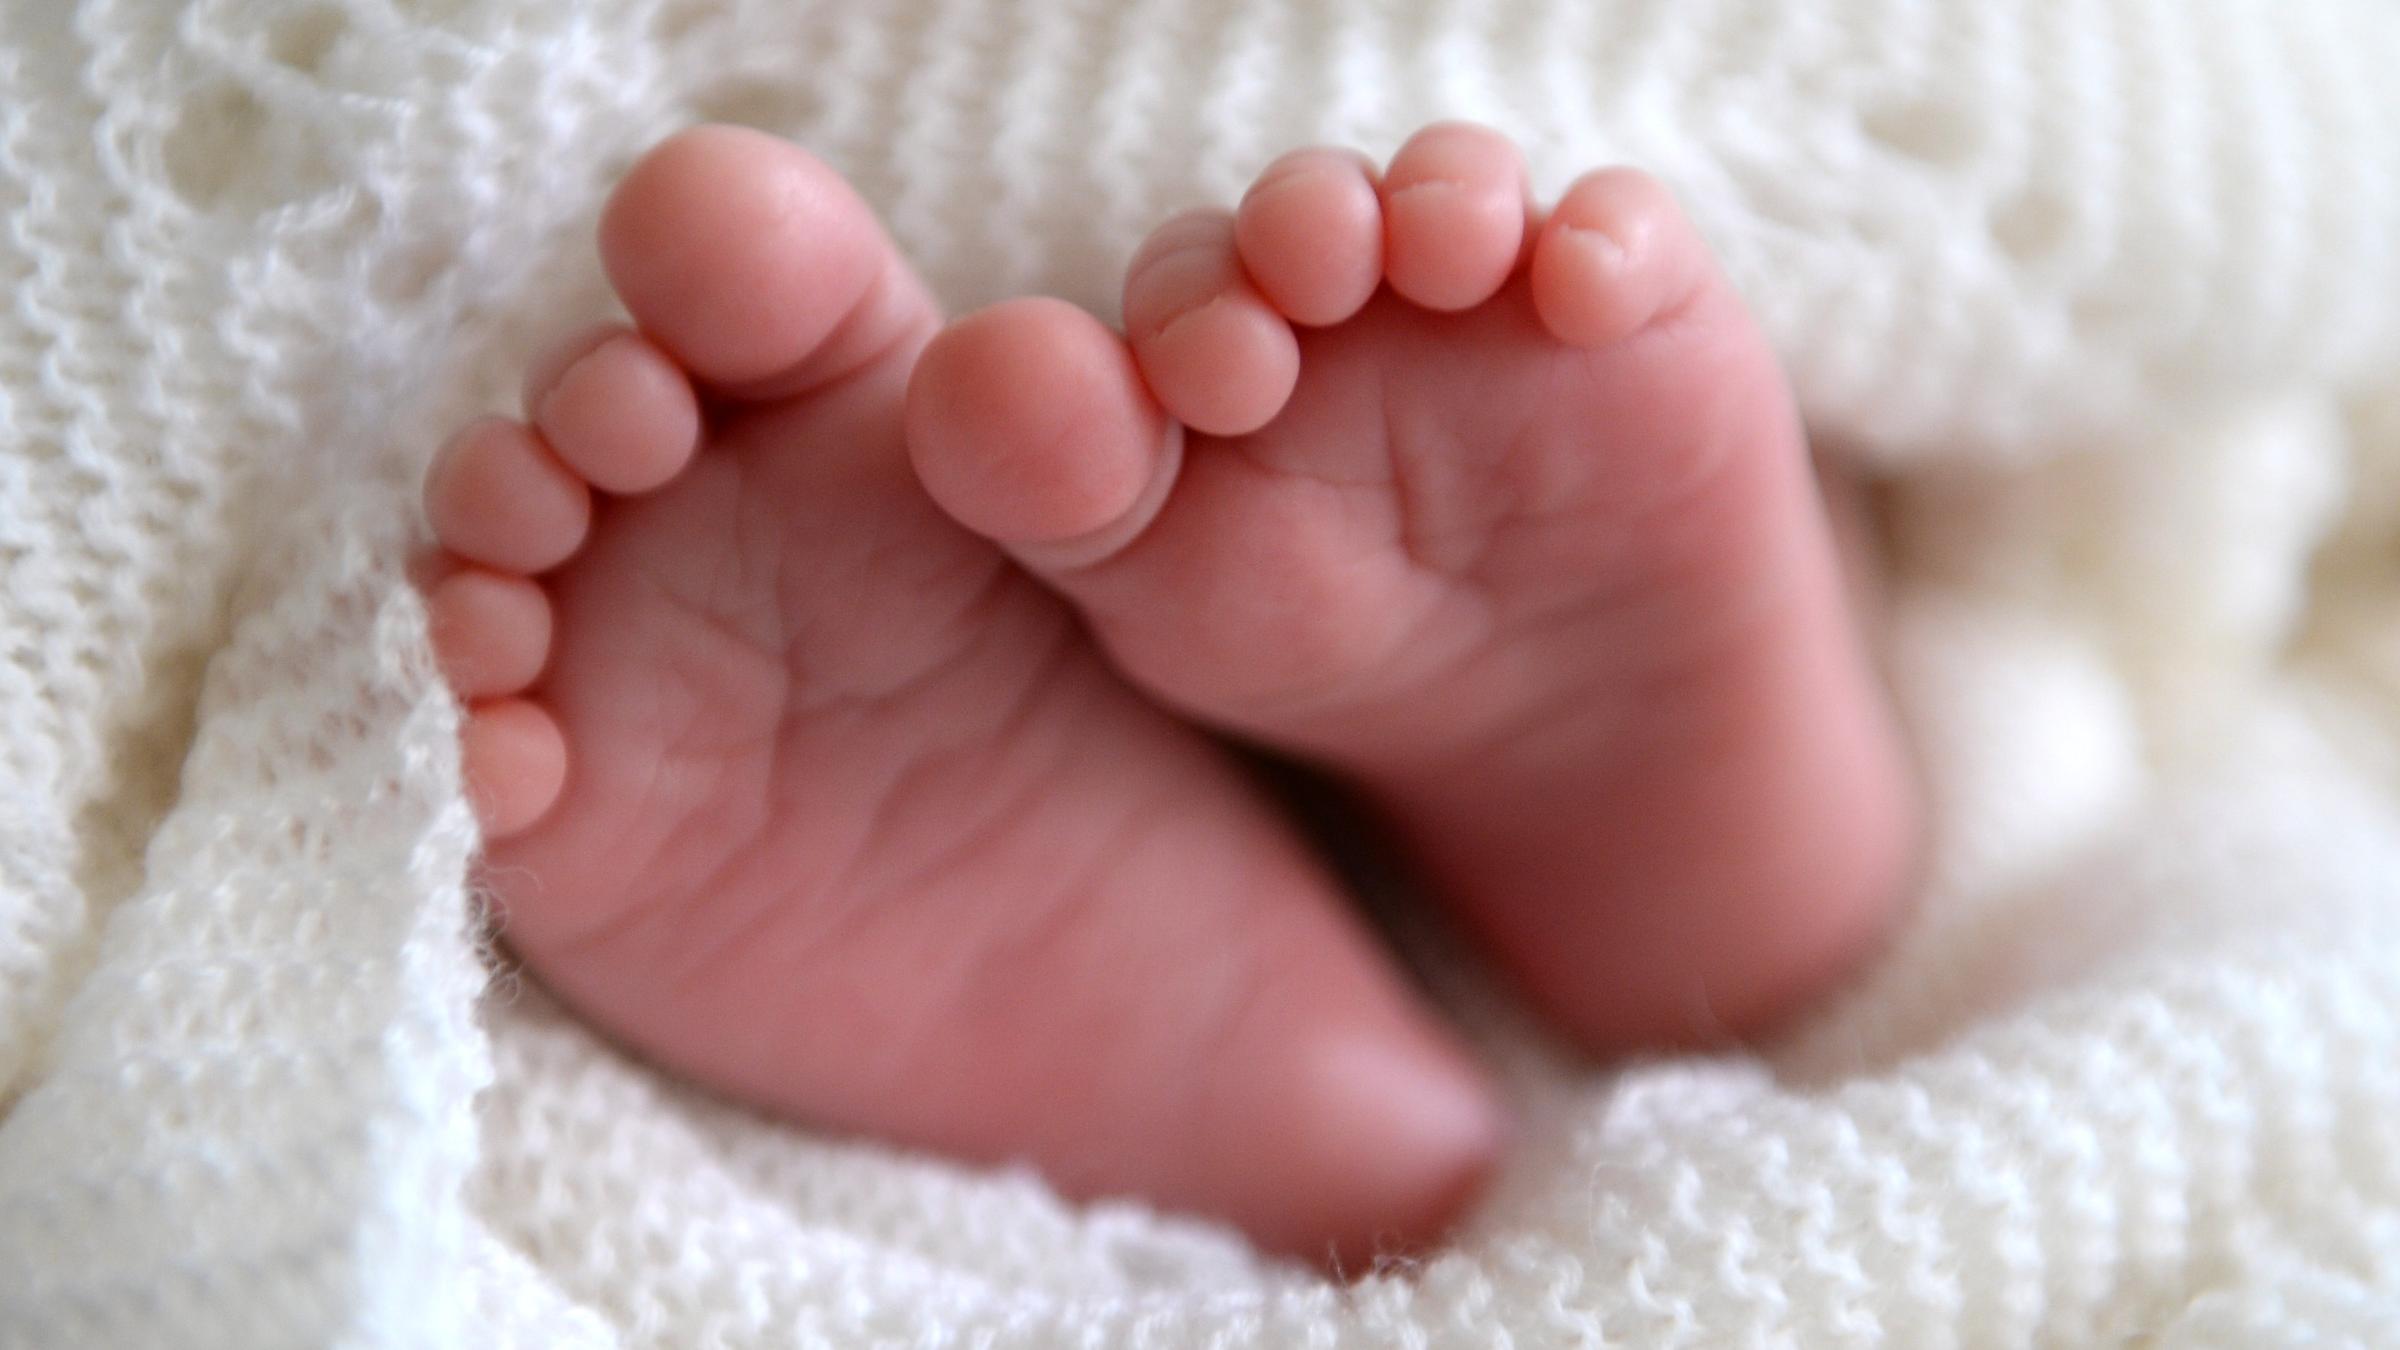 Riskante Schlaf-Bilder auf Windelpaketen, so schützen Sie Ihr Baby vorm  Kindstod - FOCUS online